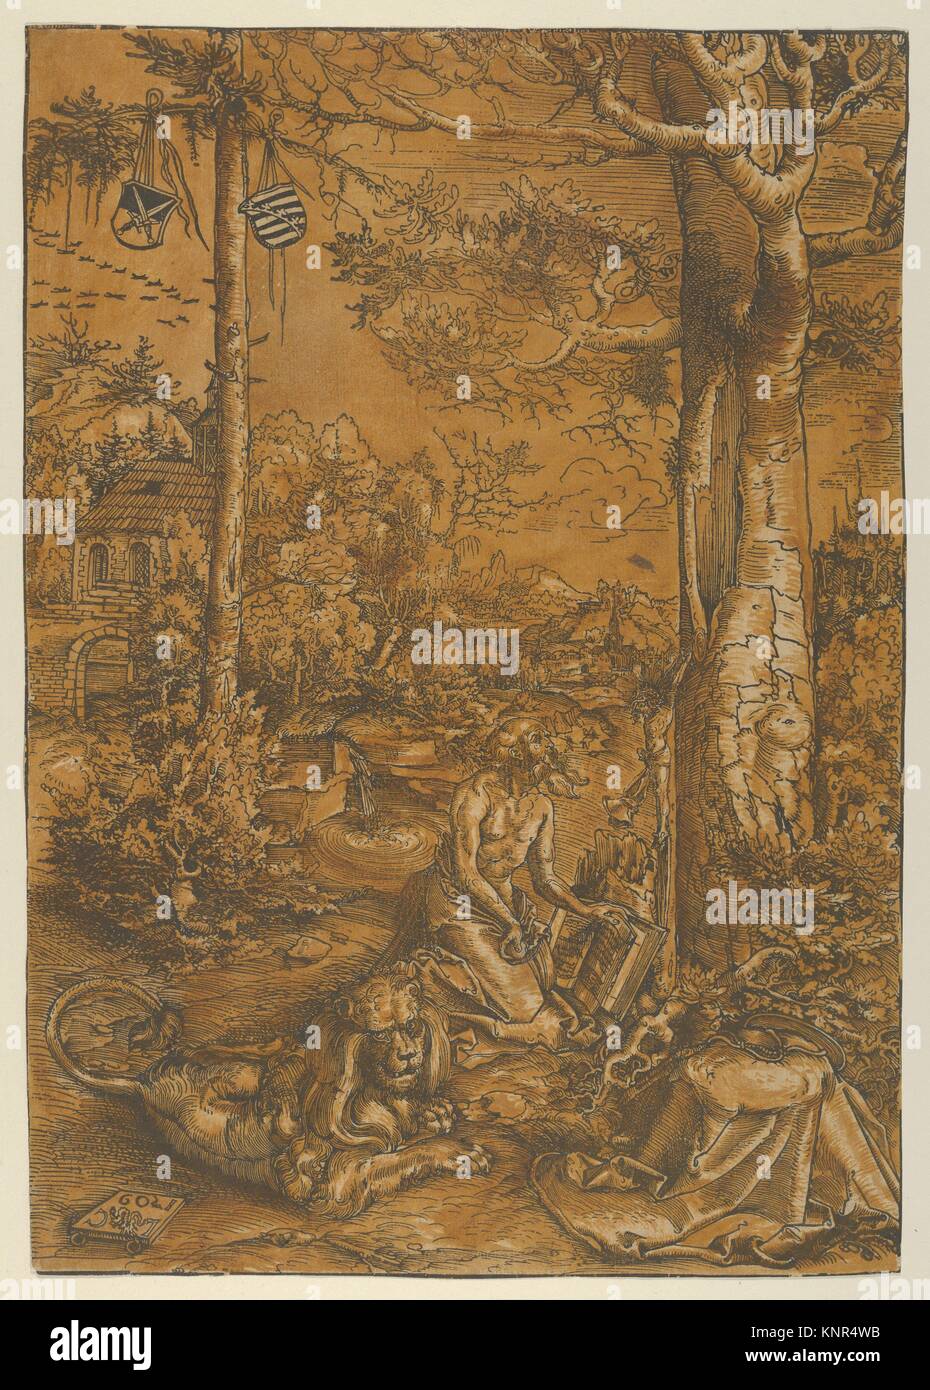 La penitencia de San Jerónimo. Artista: Lucas Cranach Kronach (alemán, 1472-1553) de Weimar; Fecha: 1509; media: Xilografía, Coloreado a mano. Foto de stock